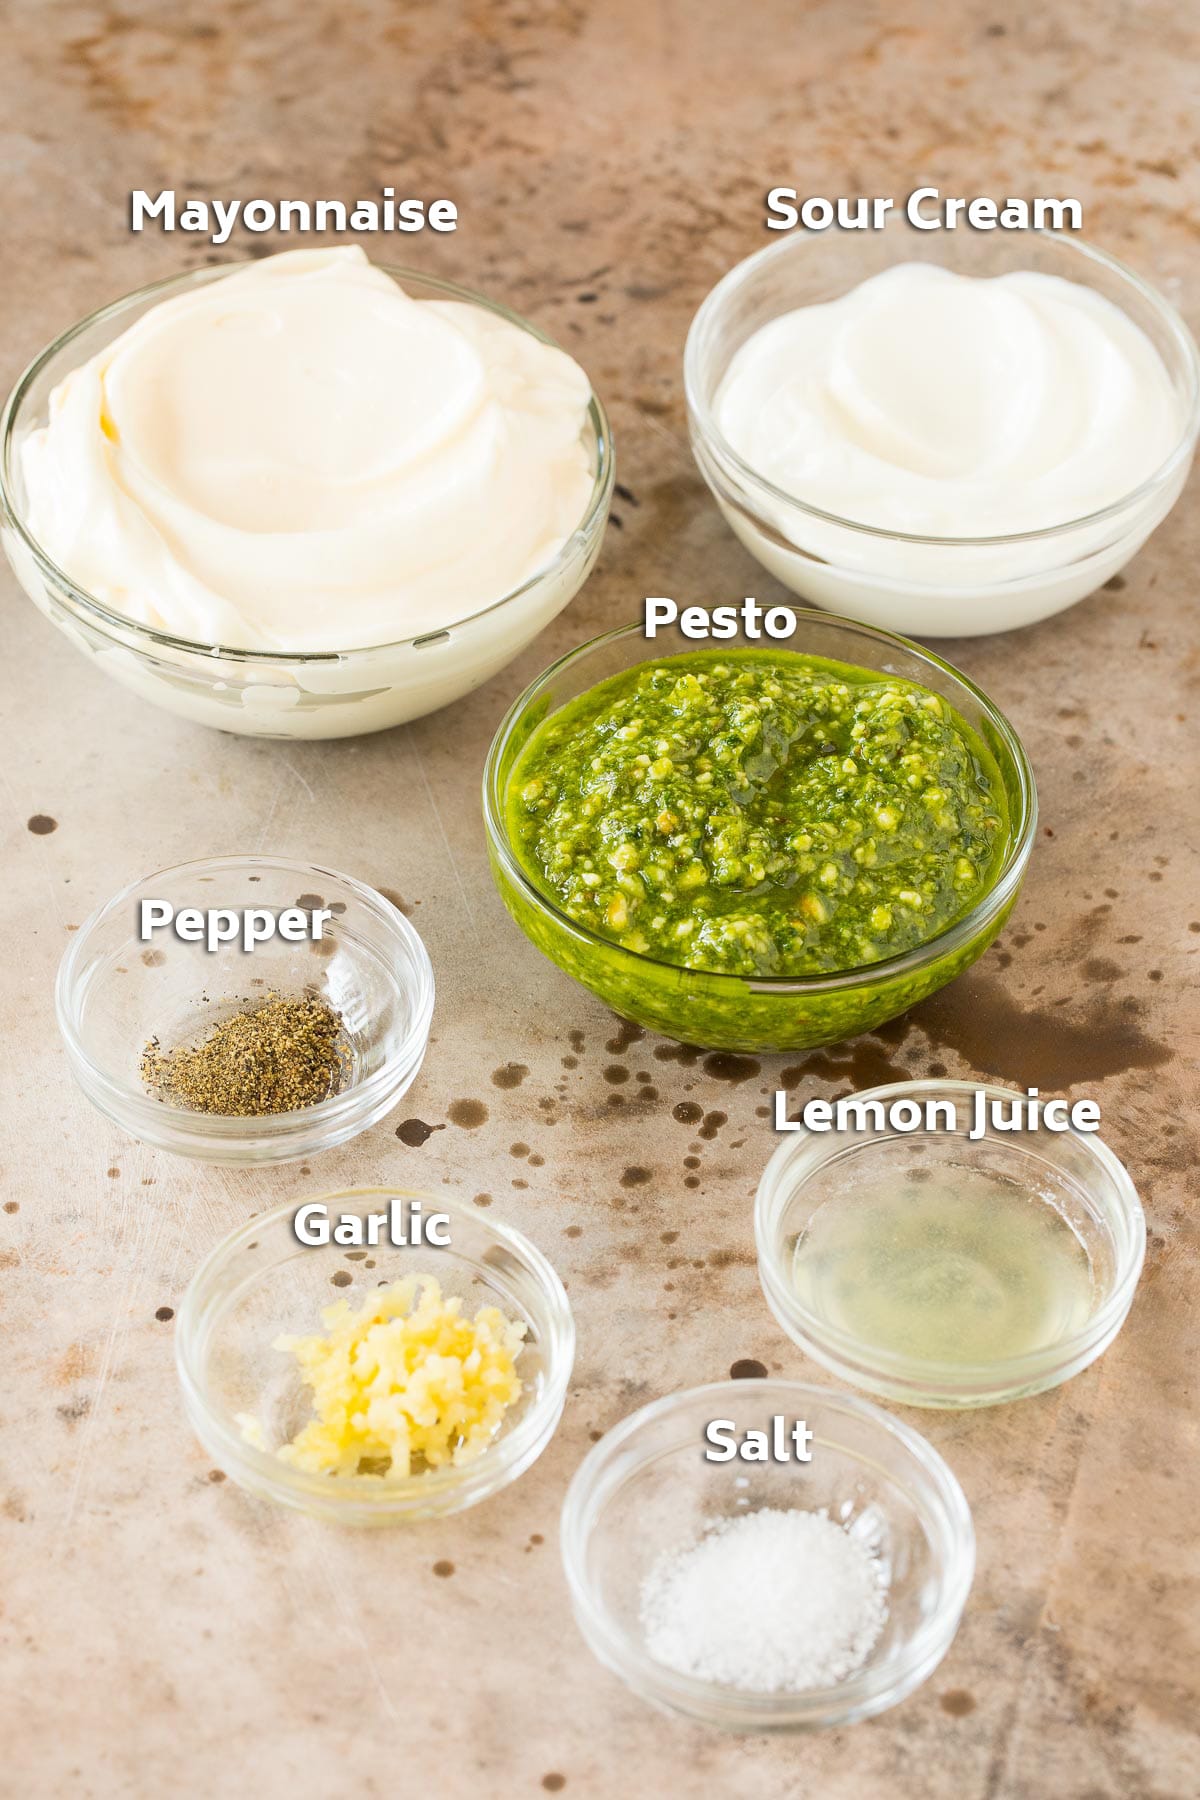 Bowls of mayonnaise, sour cream, pesto and seasonings.